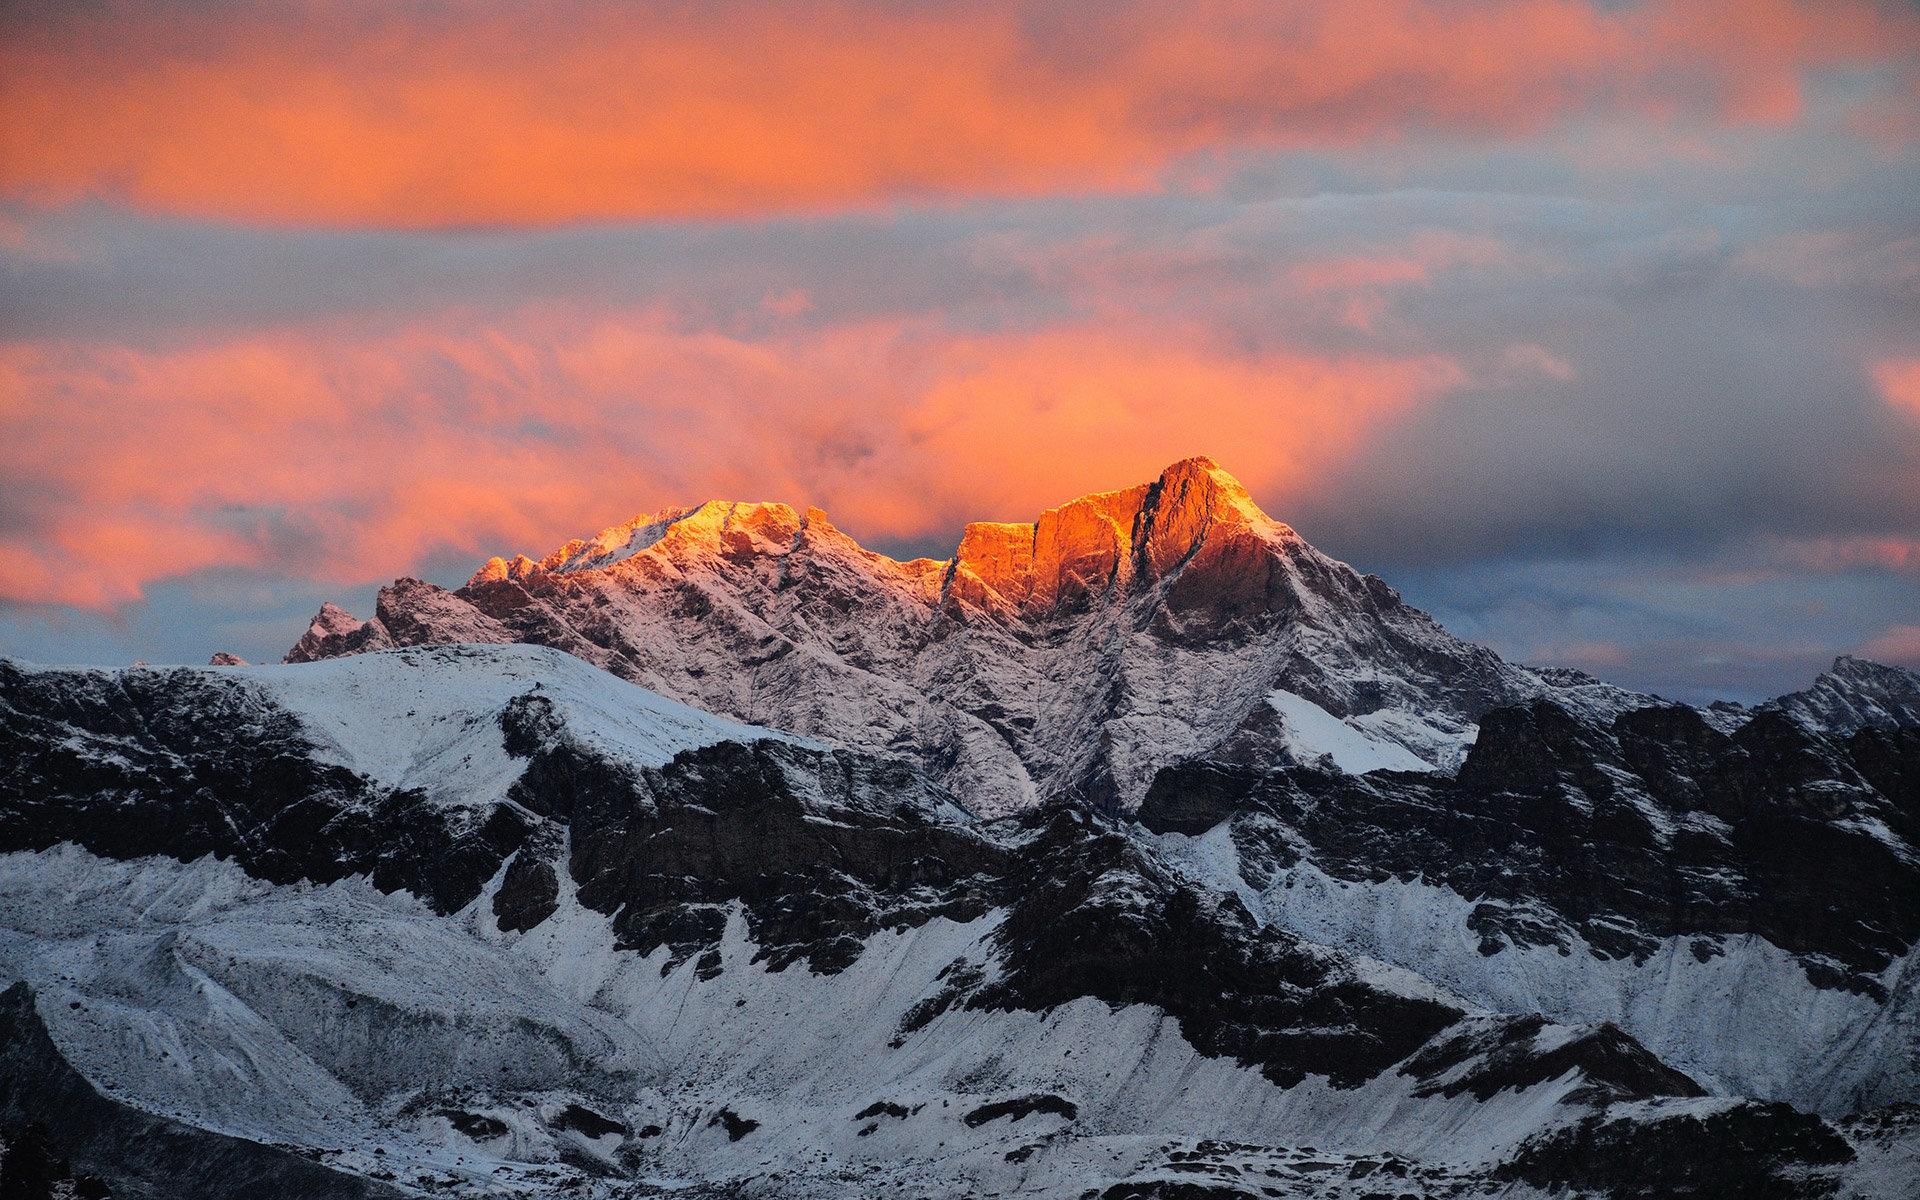 Mount Everest wallpaper HD for desktop background